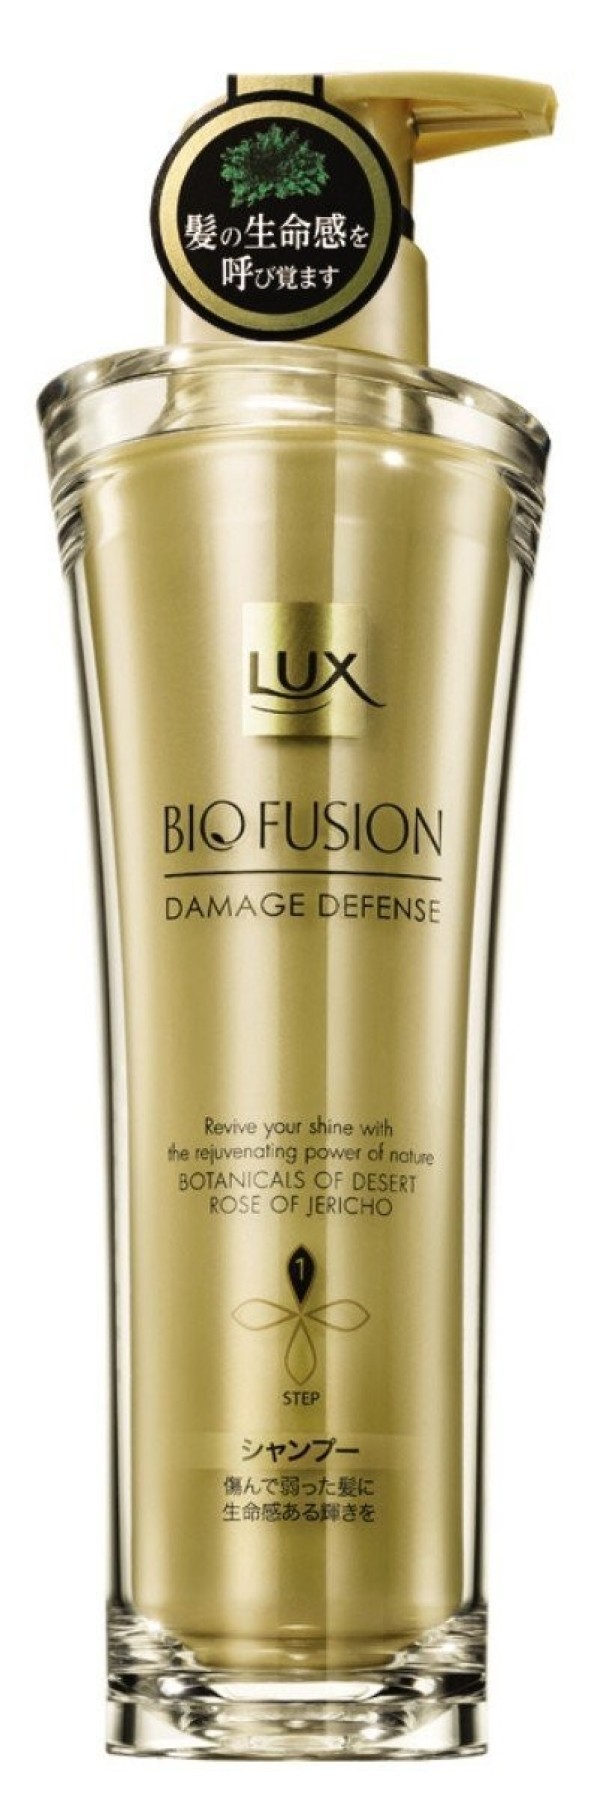 Шампунь LUX BIO FUSION для укрепления волос